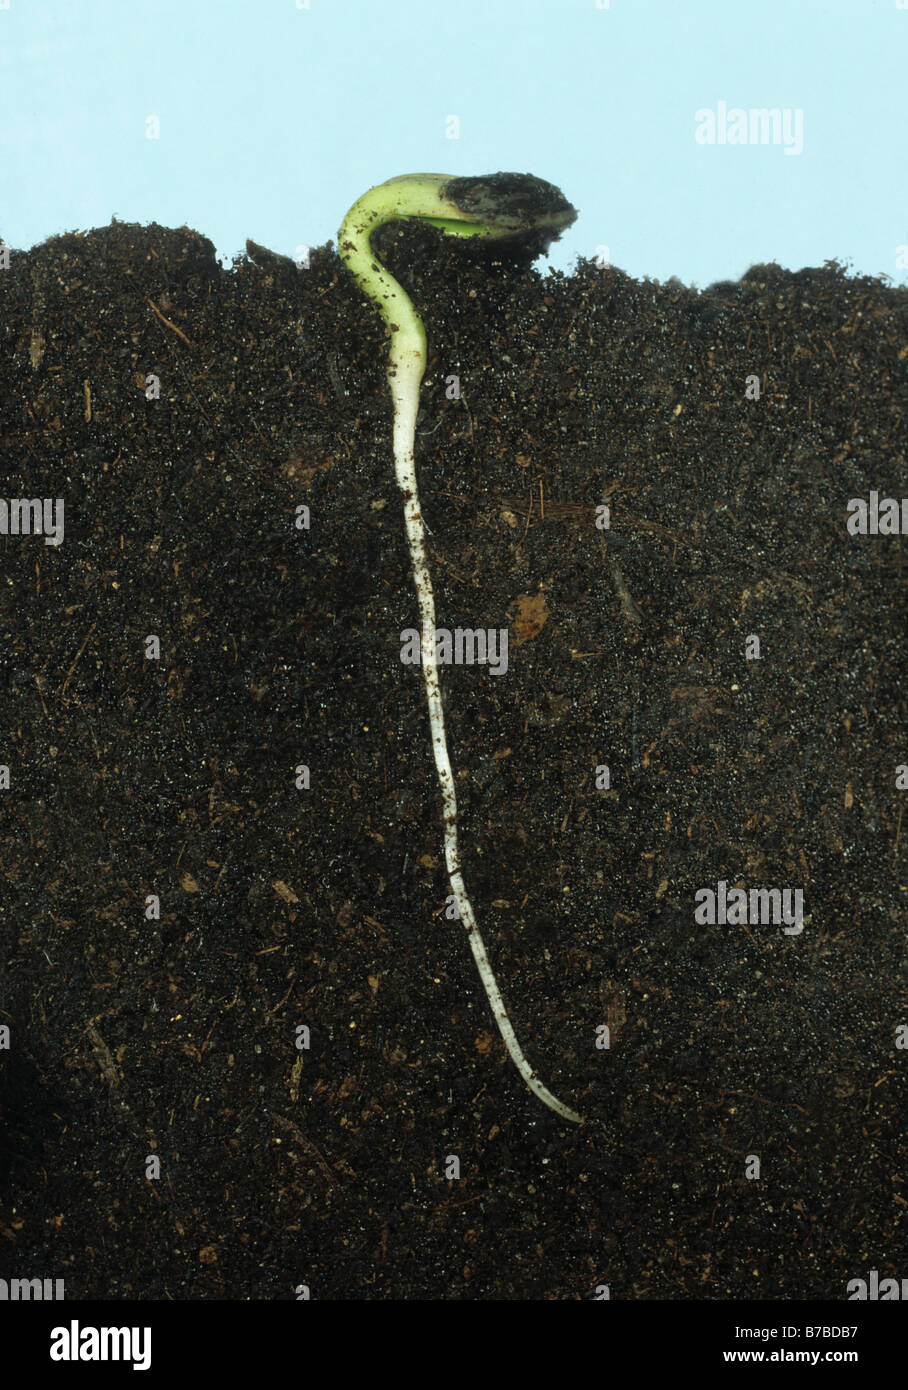 Tournesol des semis avec des graines bien développées et de la radicule cotylédons qu'émerger Banque D'Images